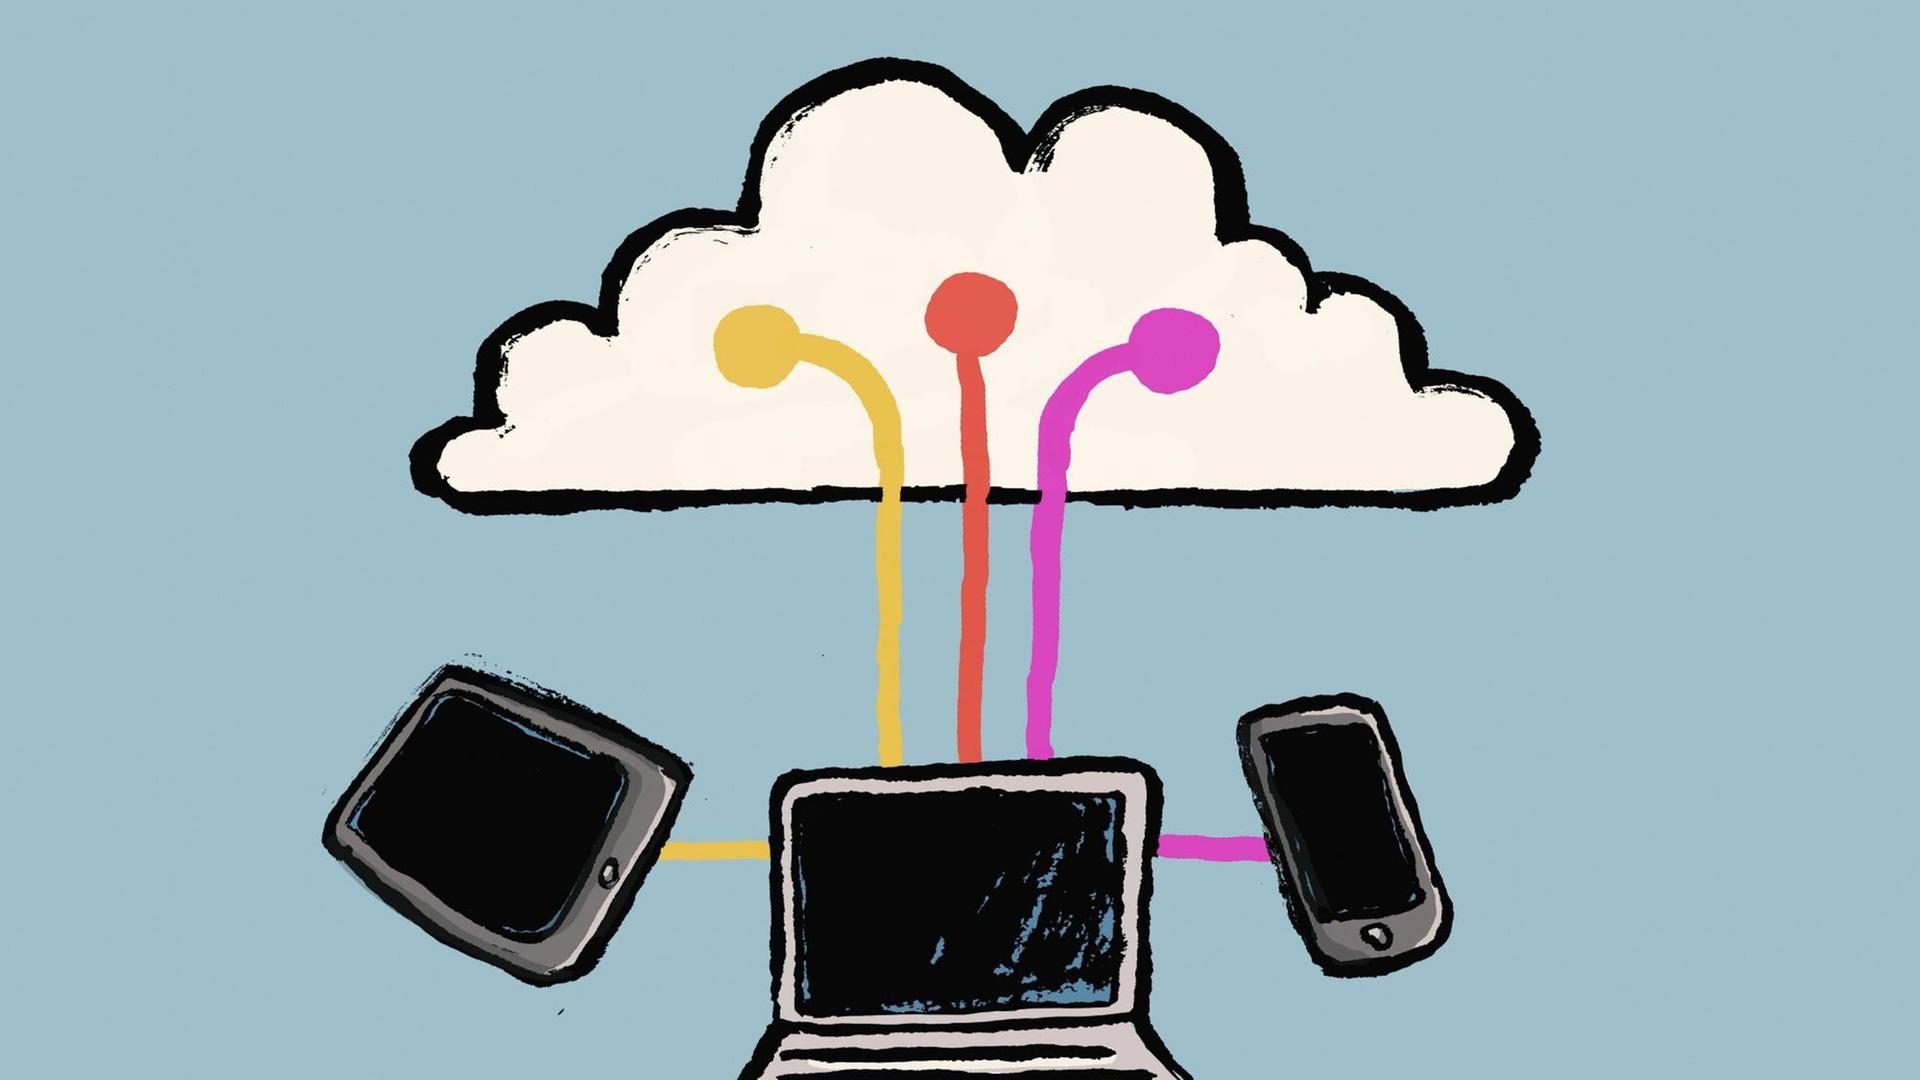 Illustrative Veranschaulichung von Technologien rund um einer Wolke vor blauem Hintergrund.